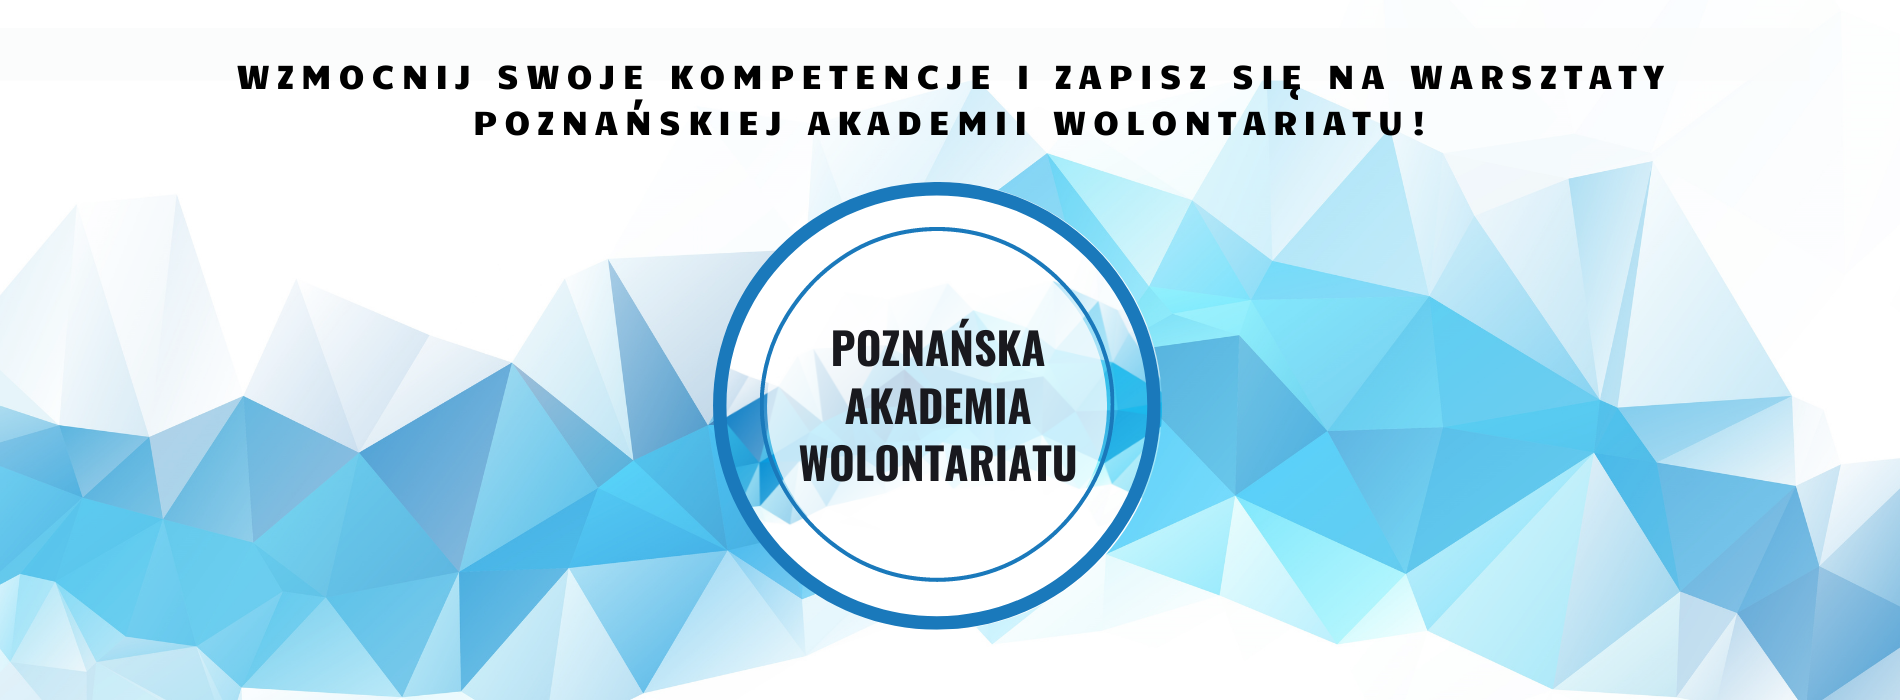 Poznańska Akademia Wolontariatu. Wzmocnij swoje kompetencje i zapisz się na warsztaty